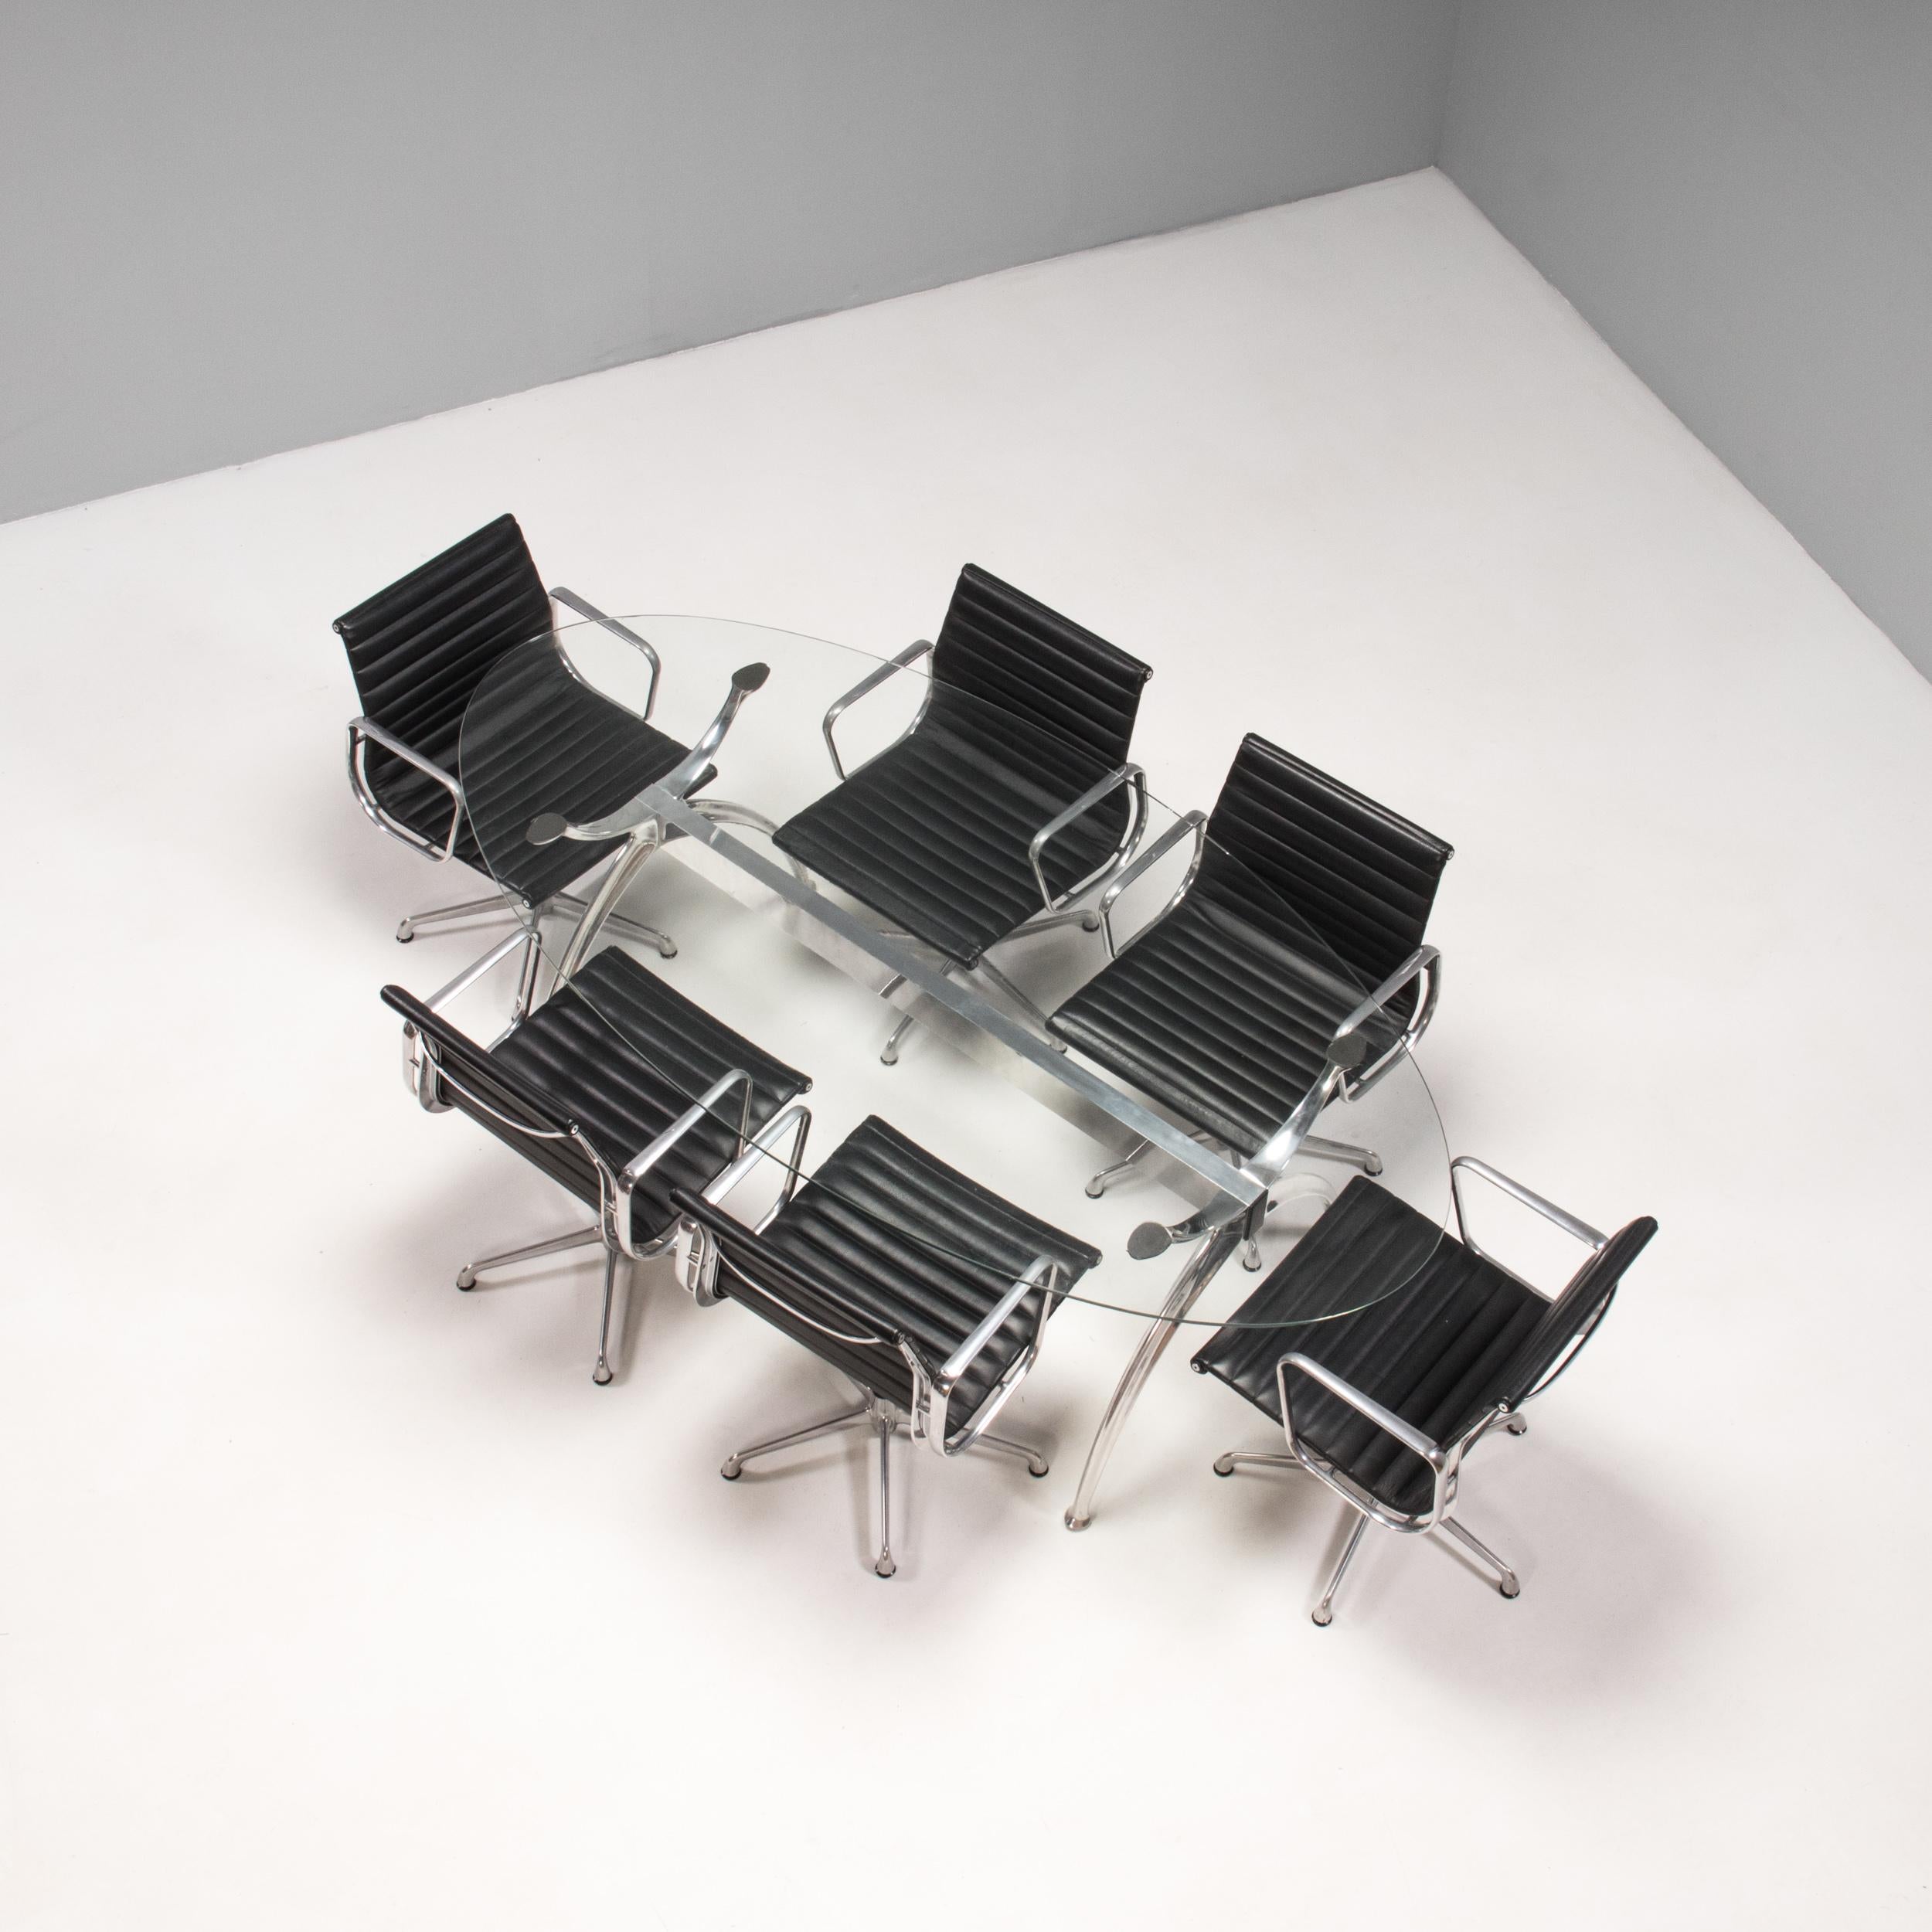 Conçue à l'origine par Charles et Ray Eames en 1958, la chaise EA 108 est devenue depuis une icône du design.

ICF a été l'un des quatre premiers fabricants à qui Herman Miller a accordé une licence pour reproduire les chaises conçues par Eames,